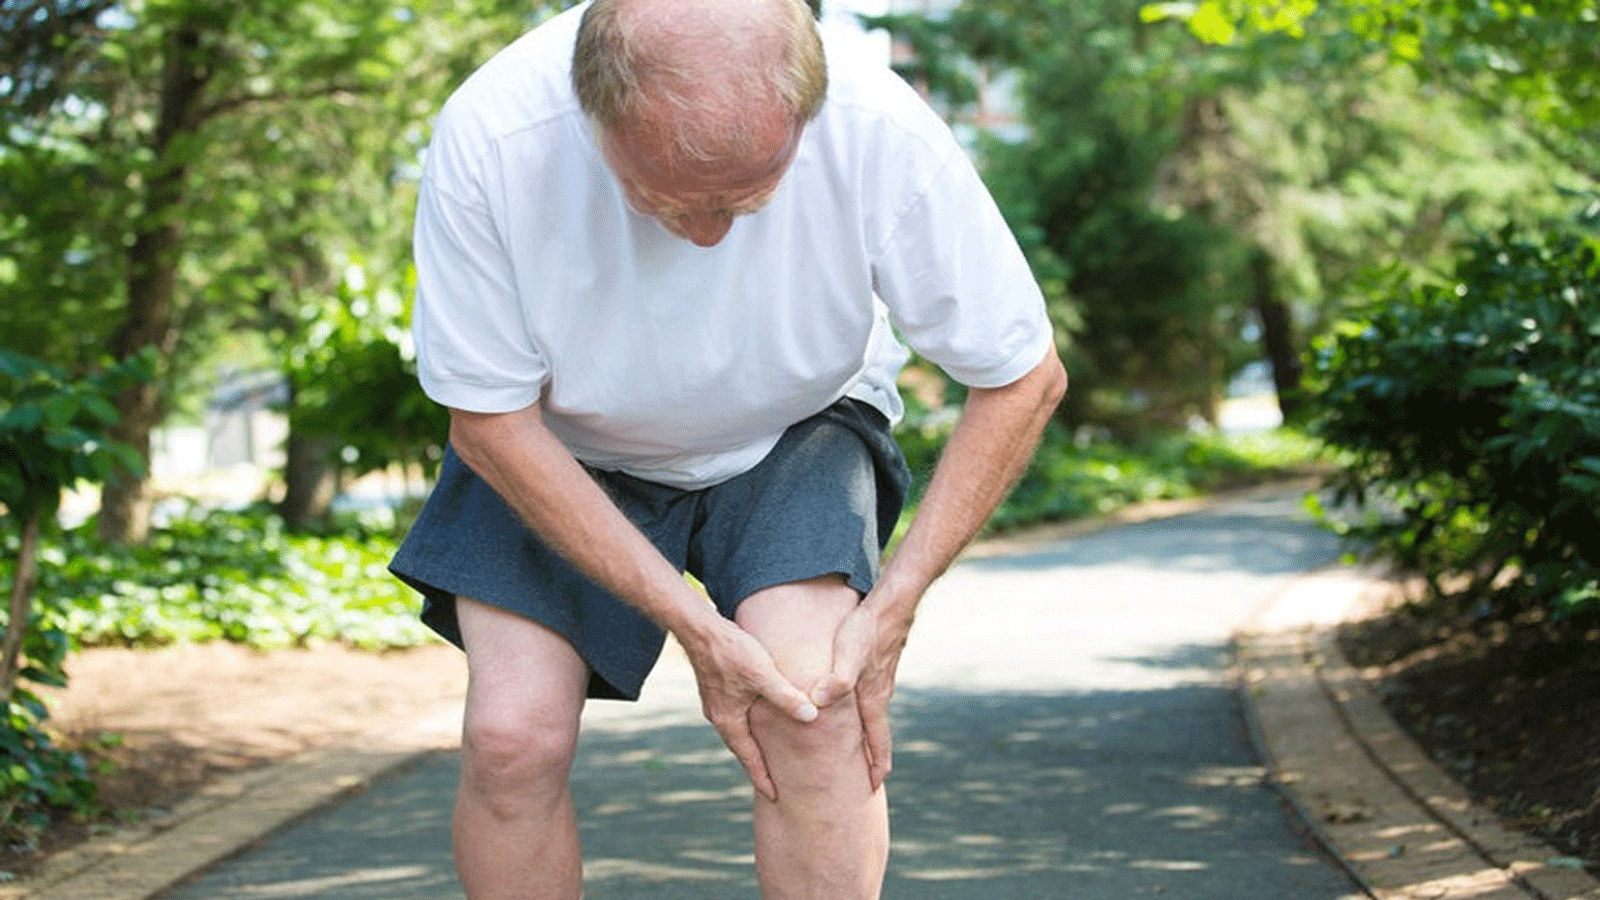 الحقن الذي يشيع استخدامها لعلاج هشاشة العظام في الركبتين ليست أفضل من العلاج الوهمي لتخفيف الألم. وهي تزيد مخاطر الآثار الجانبية الضارة